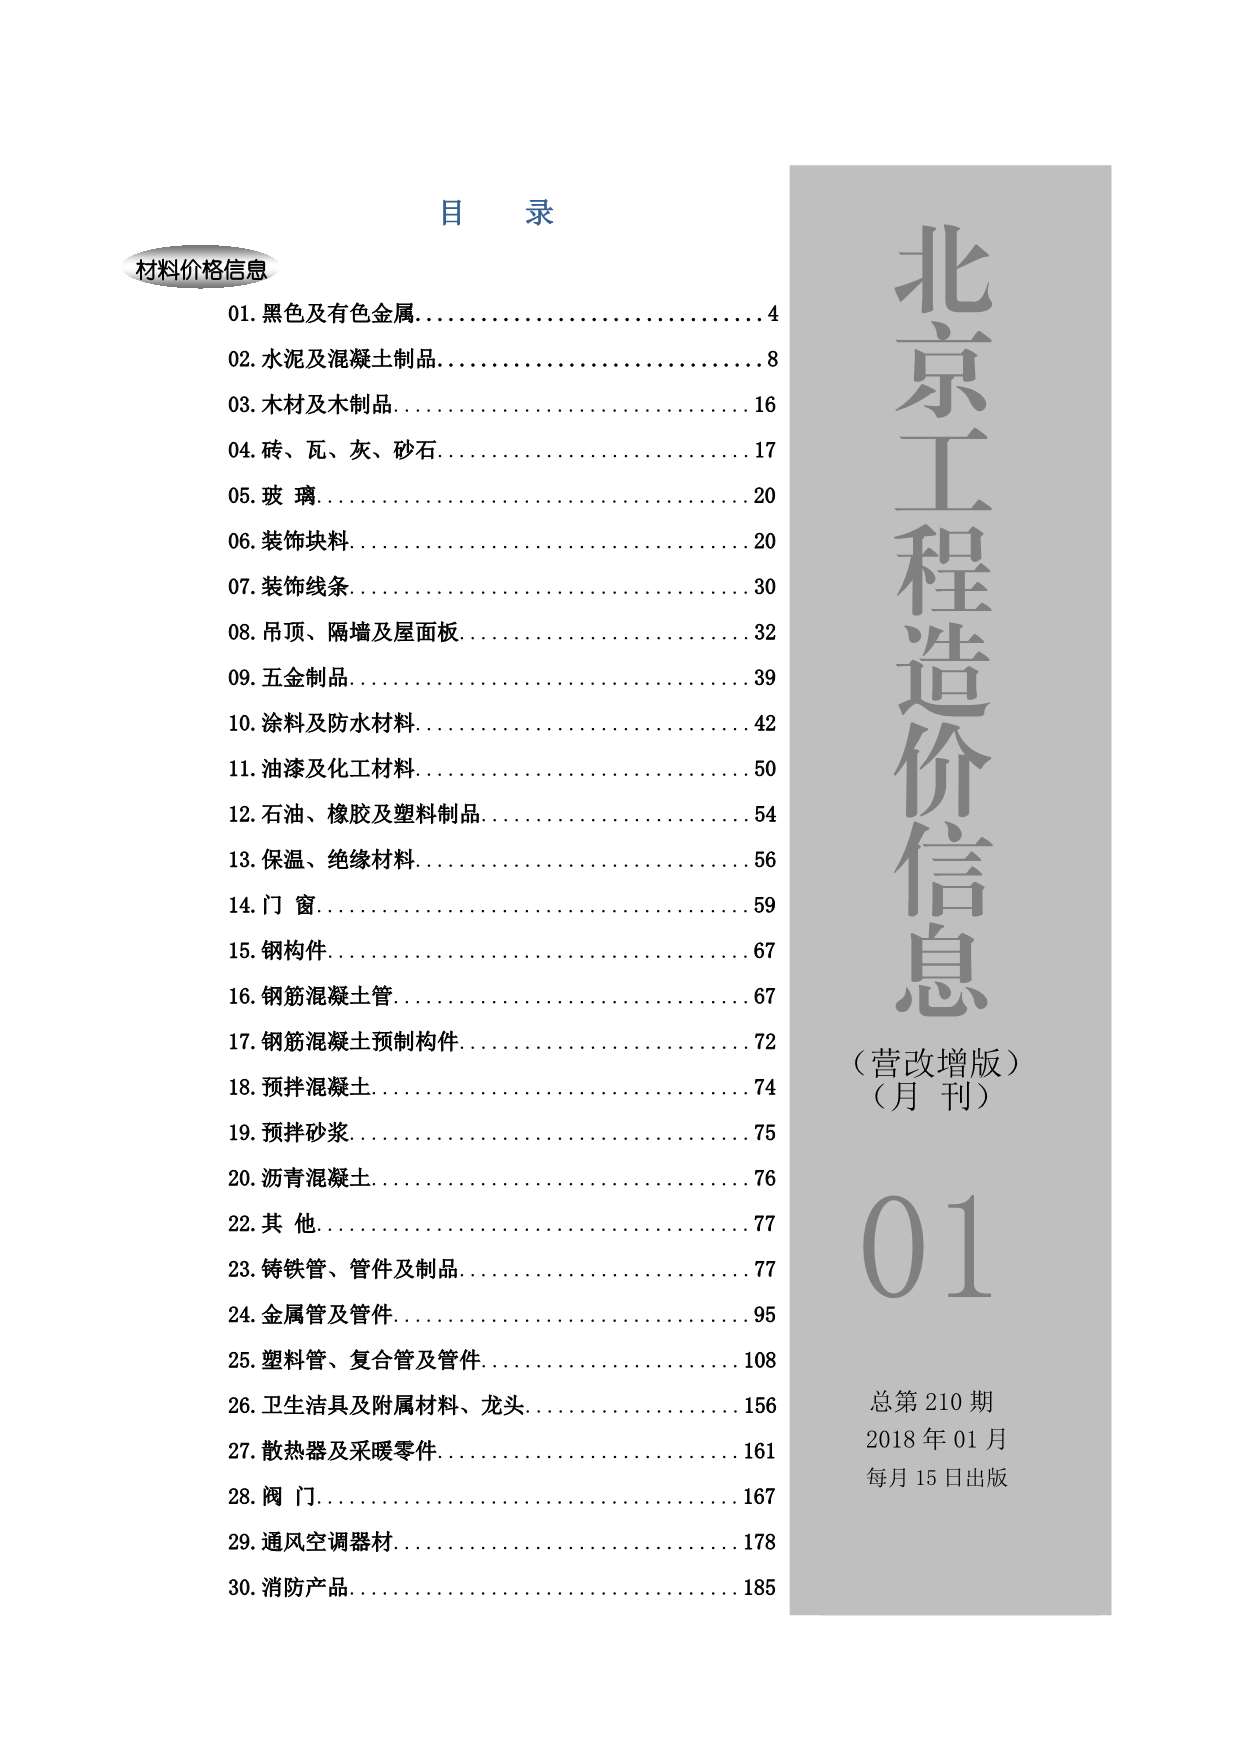 2018年1期北京营改增版造价库期刊